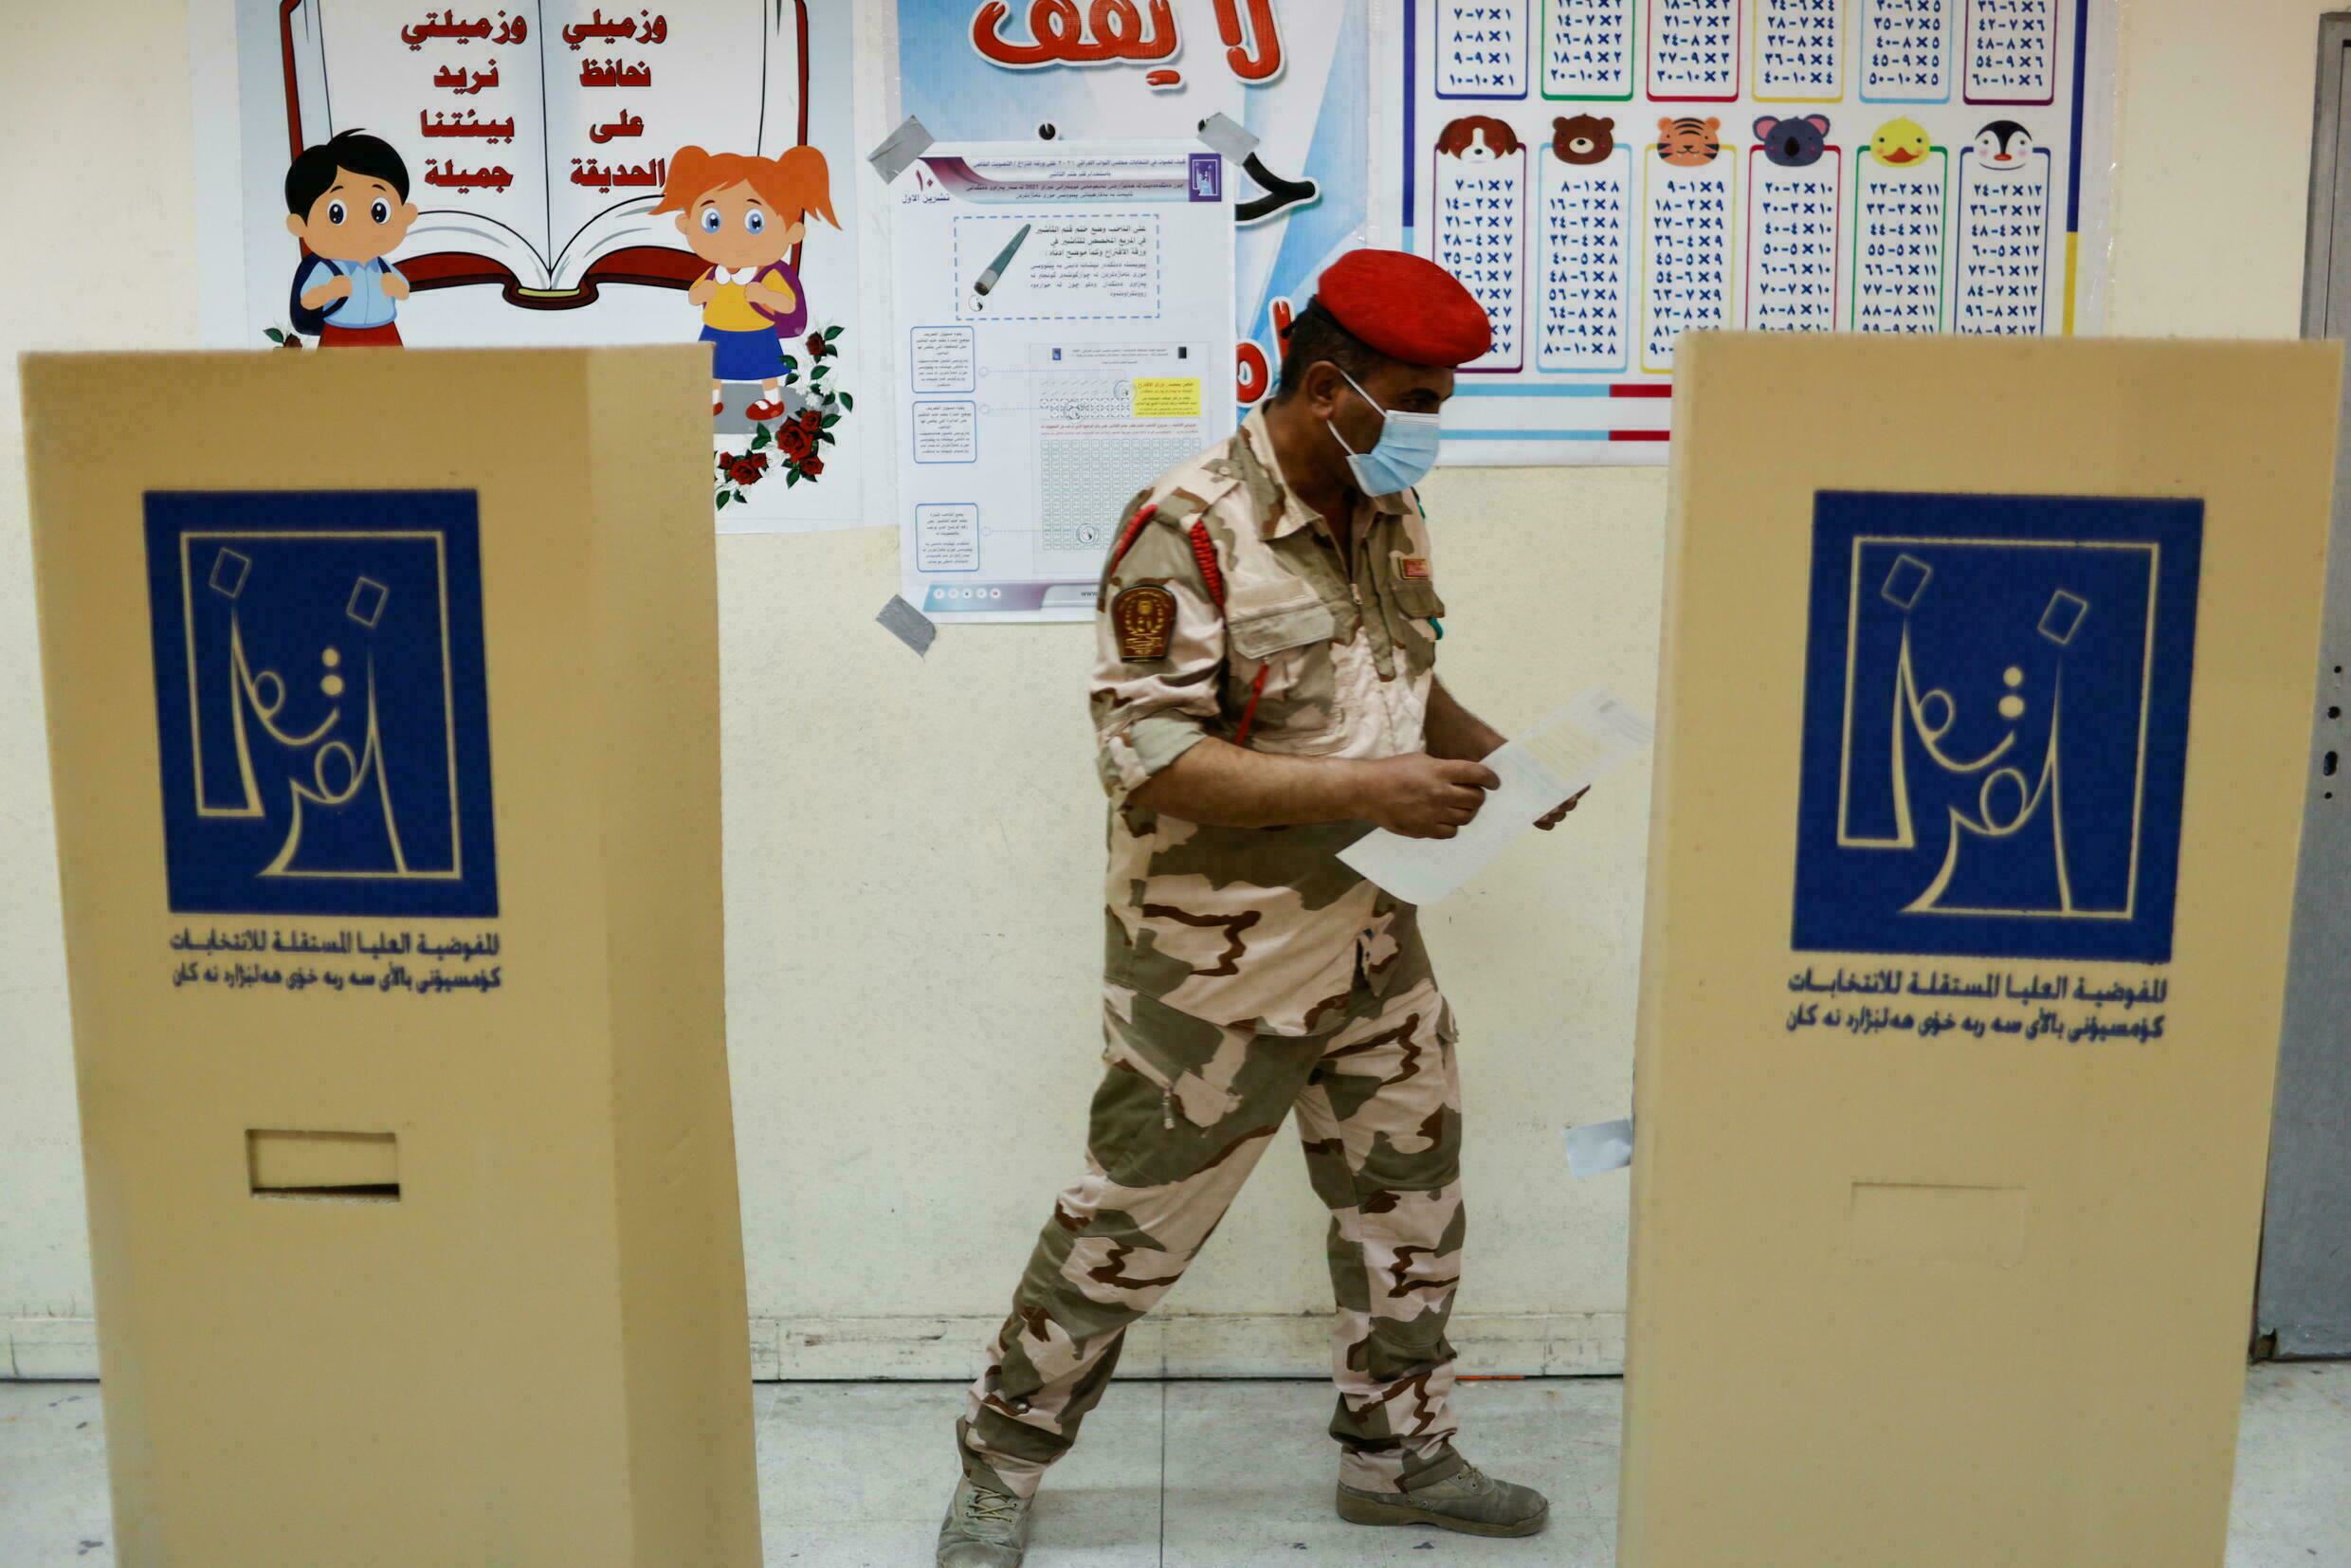  69 بالمئة اقترعوا في التصويت الخاص.. كيف توزعت نسب المشاركة في مختلف محافظات العراق؟